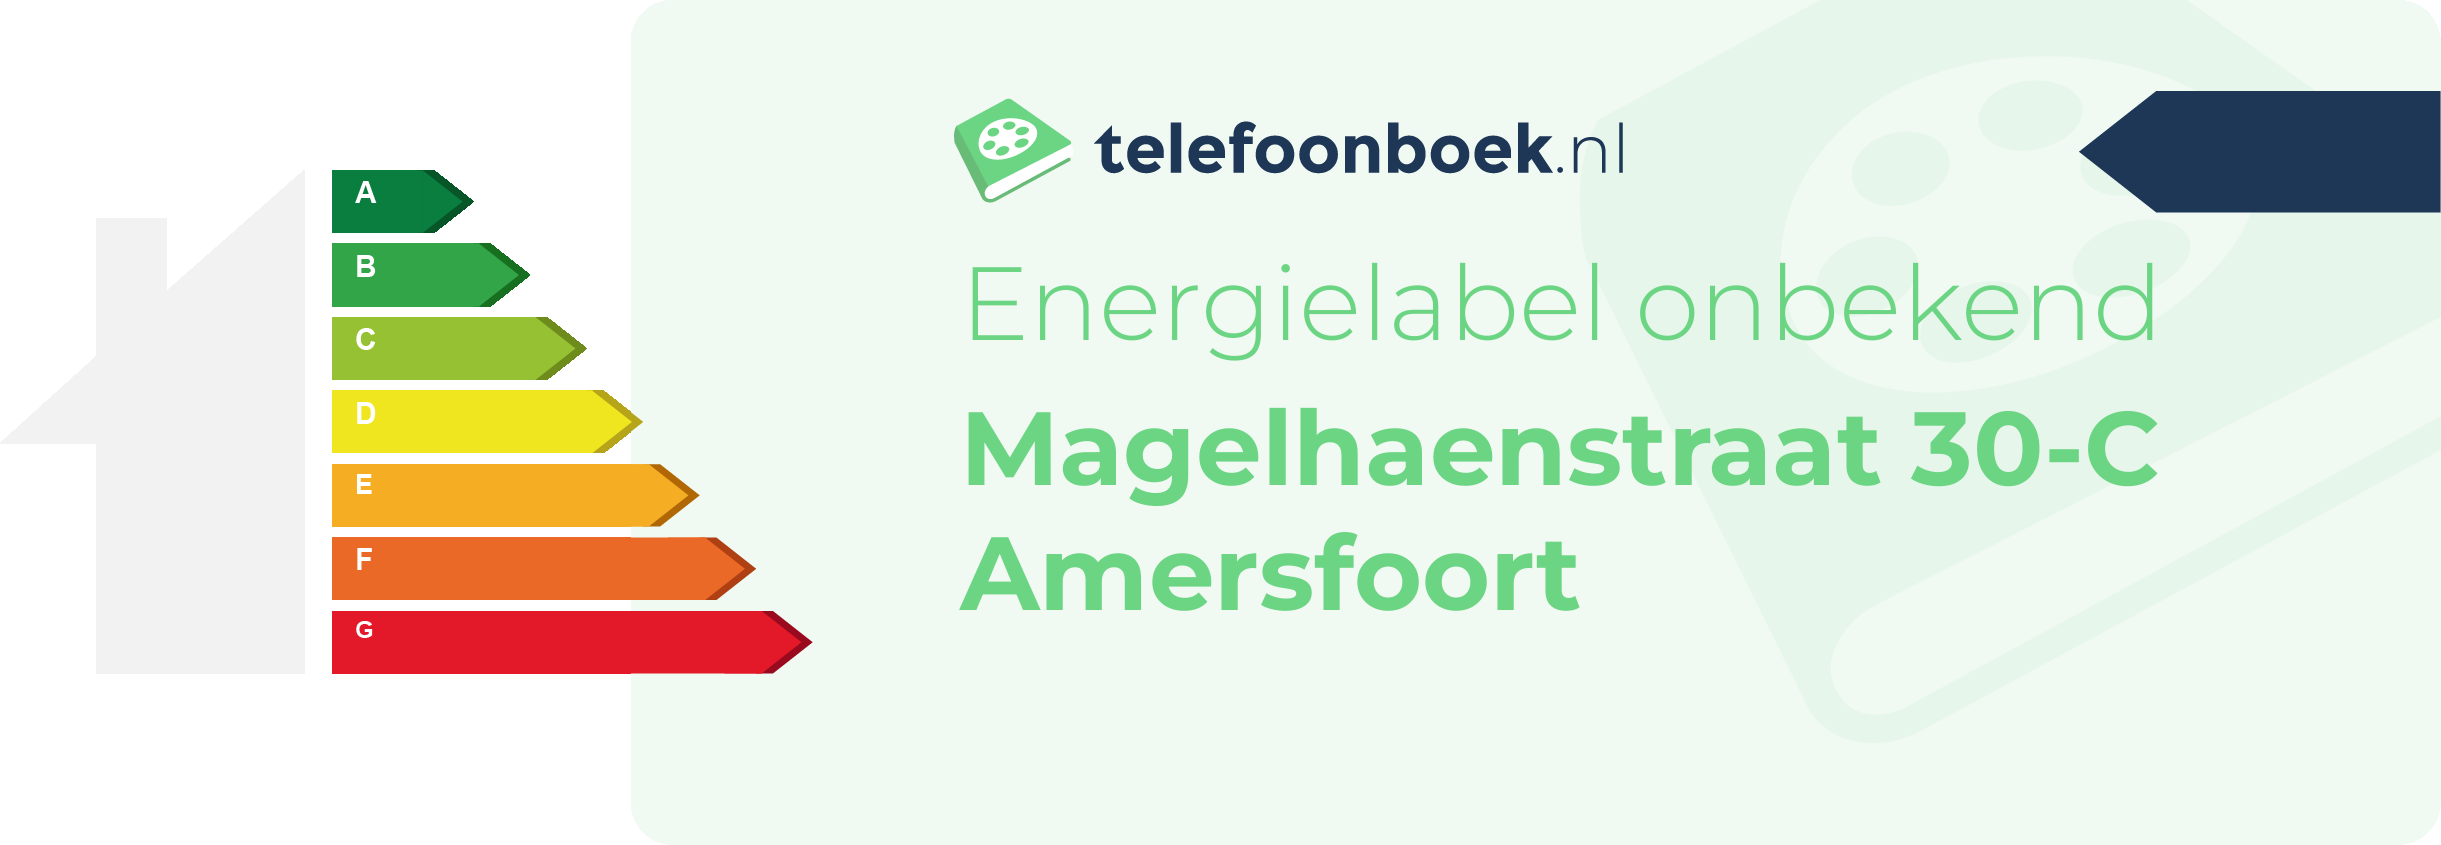 Energielabel Magelhaenstraat 30-C Amersfoort